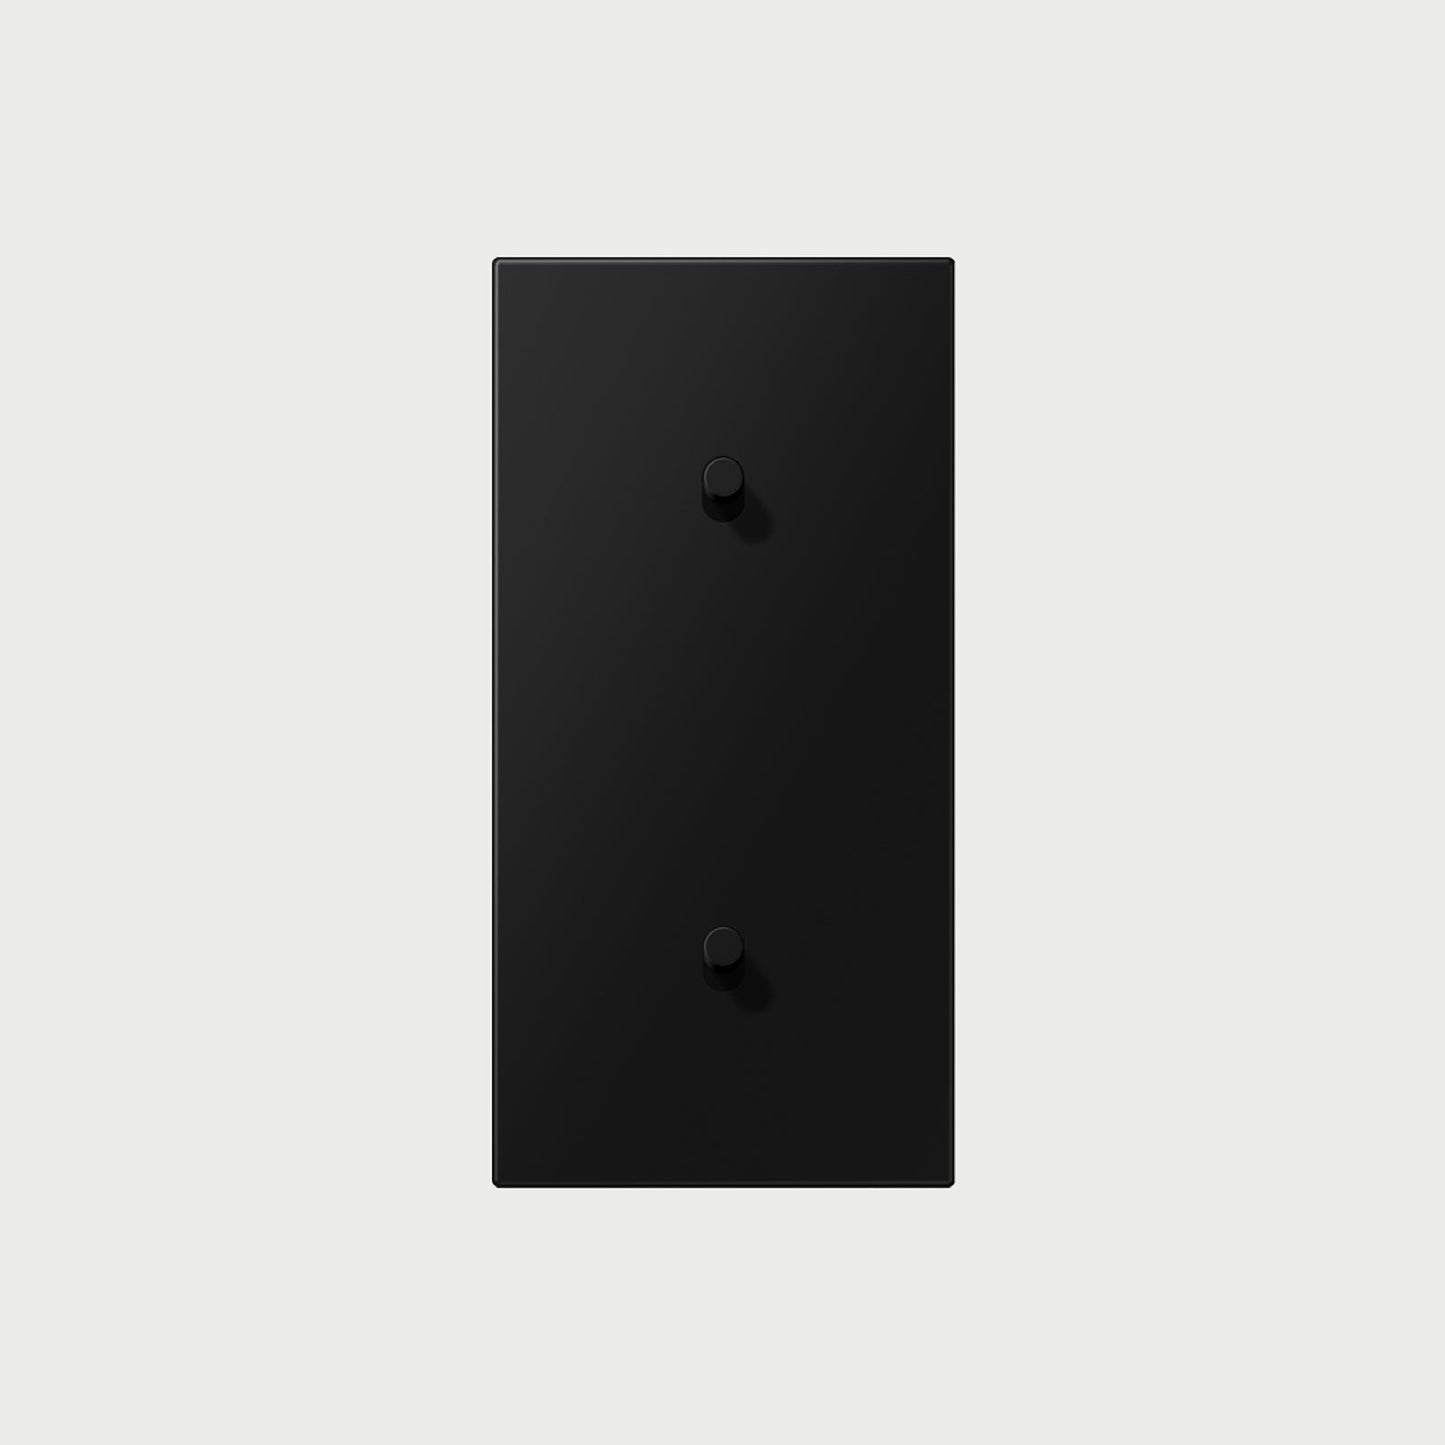 2 X 1 Toggle Vertical Matt Graphite Black / Way Cover